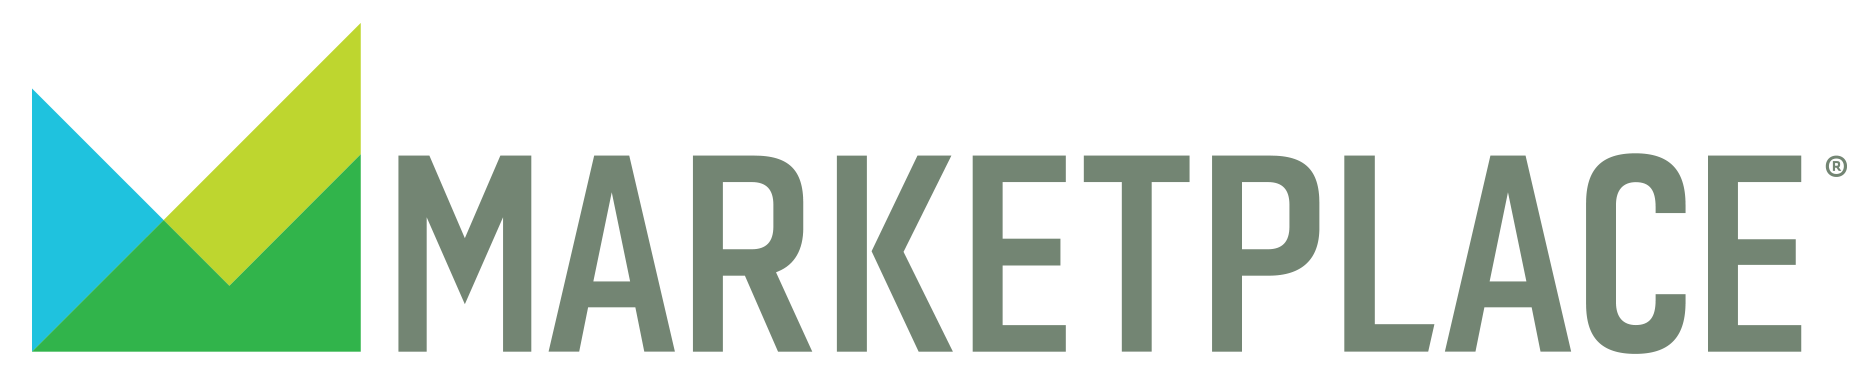 Marketplace logo. 